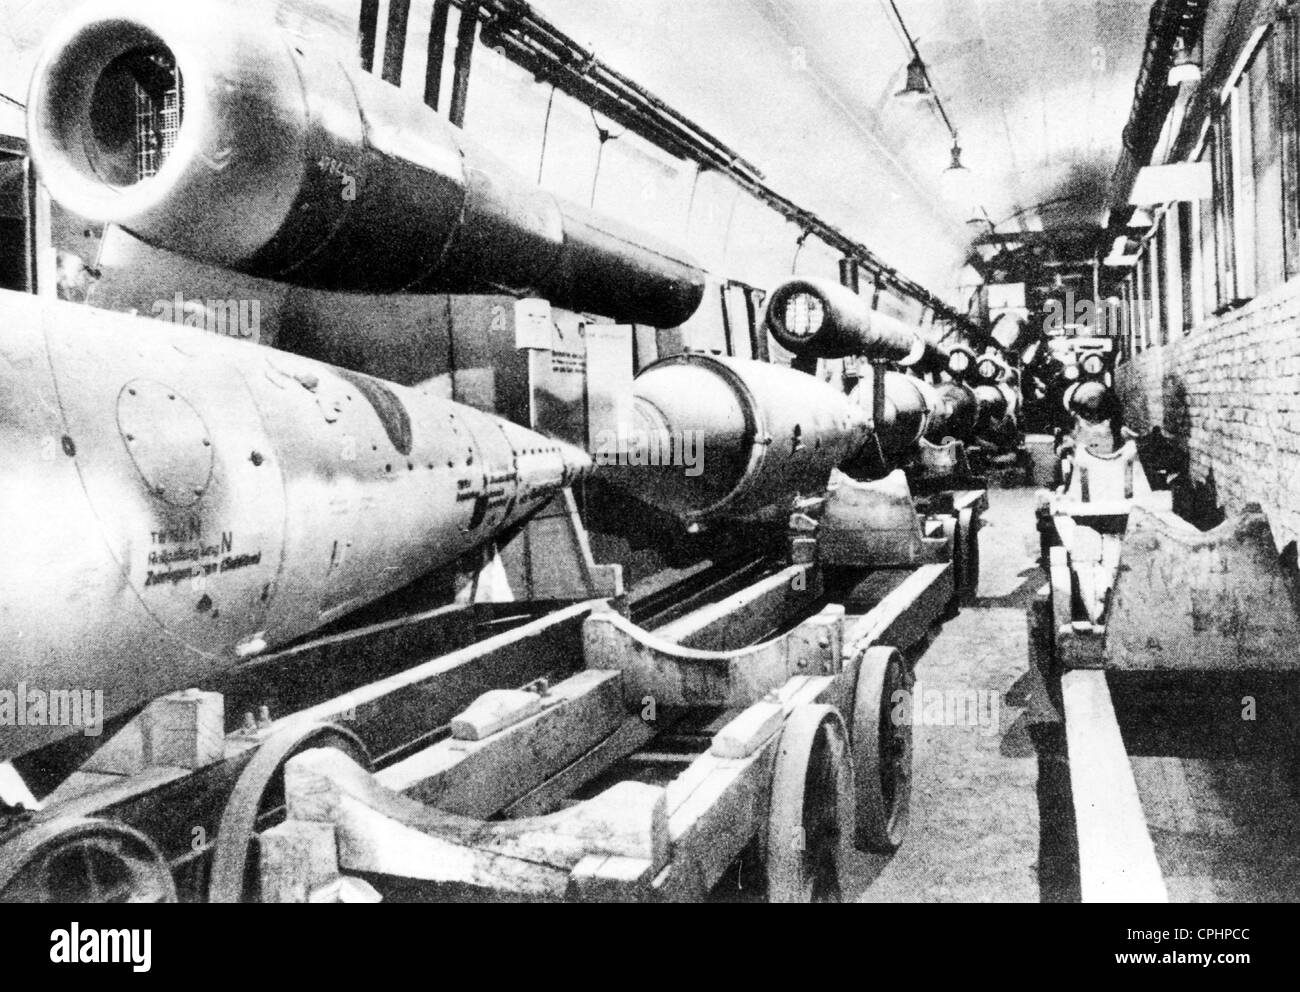 Production de la V1 rocket à Mittelbau-Dora dans un tunnel dans la montagne Kohnstein, Thuringe, 1944 (photo n/b) Banque D'Images